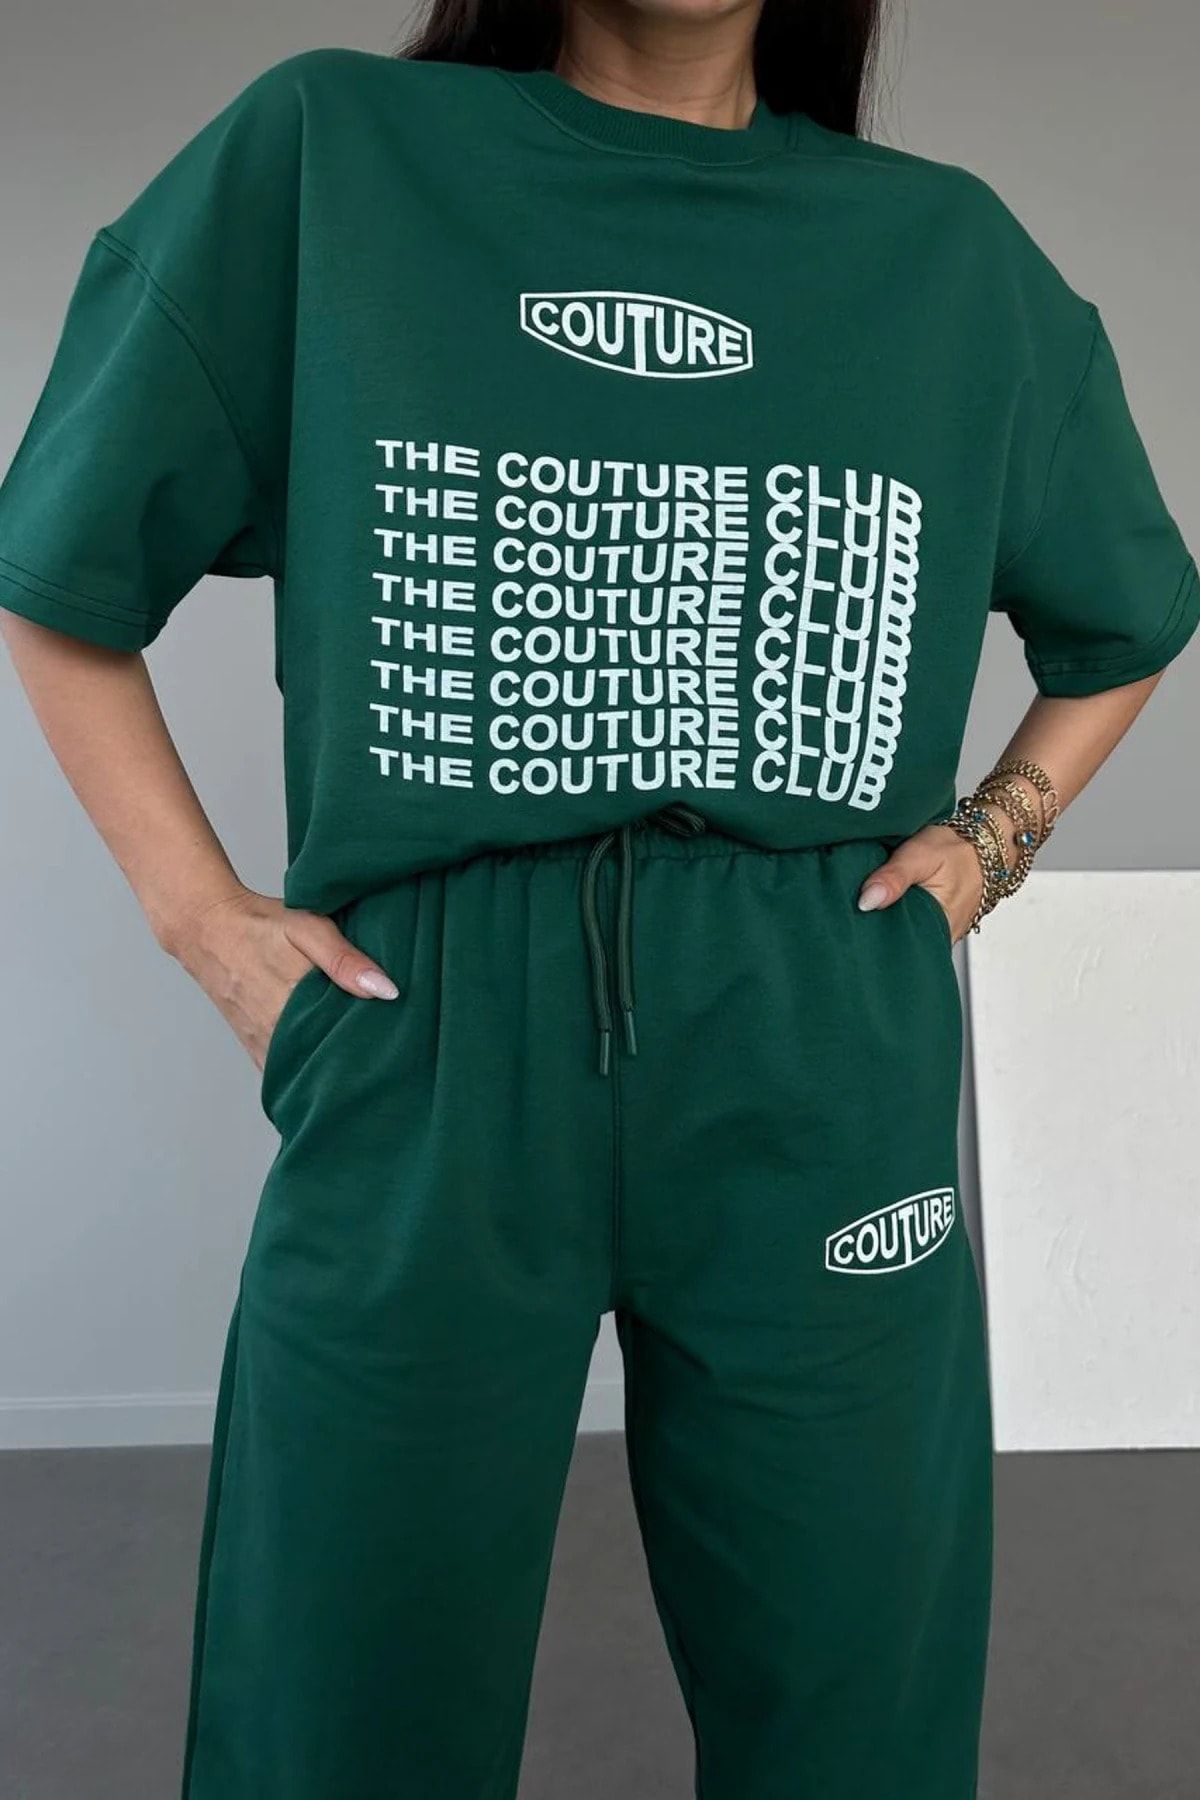 CLAYES Couture Club T-shirt Eşofman Altı Jogger- Yeşil Baskılı Alt Üst Eşofman Takım Oversize Bisiklet Yaka